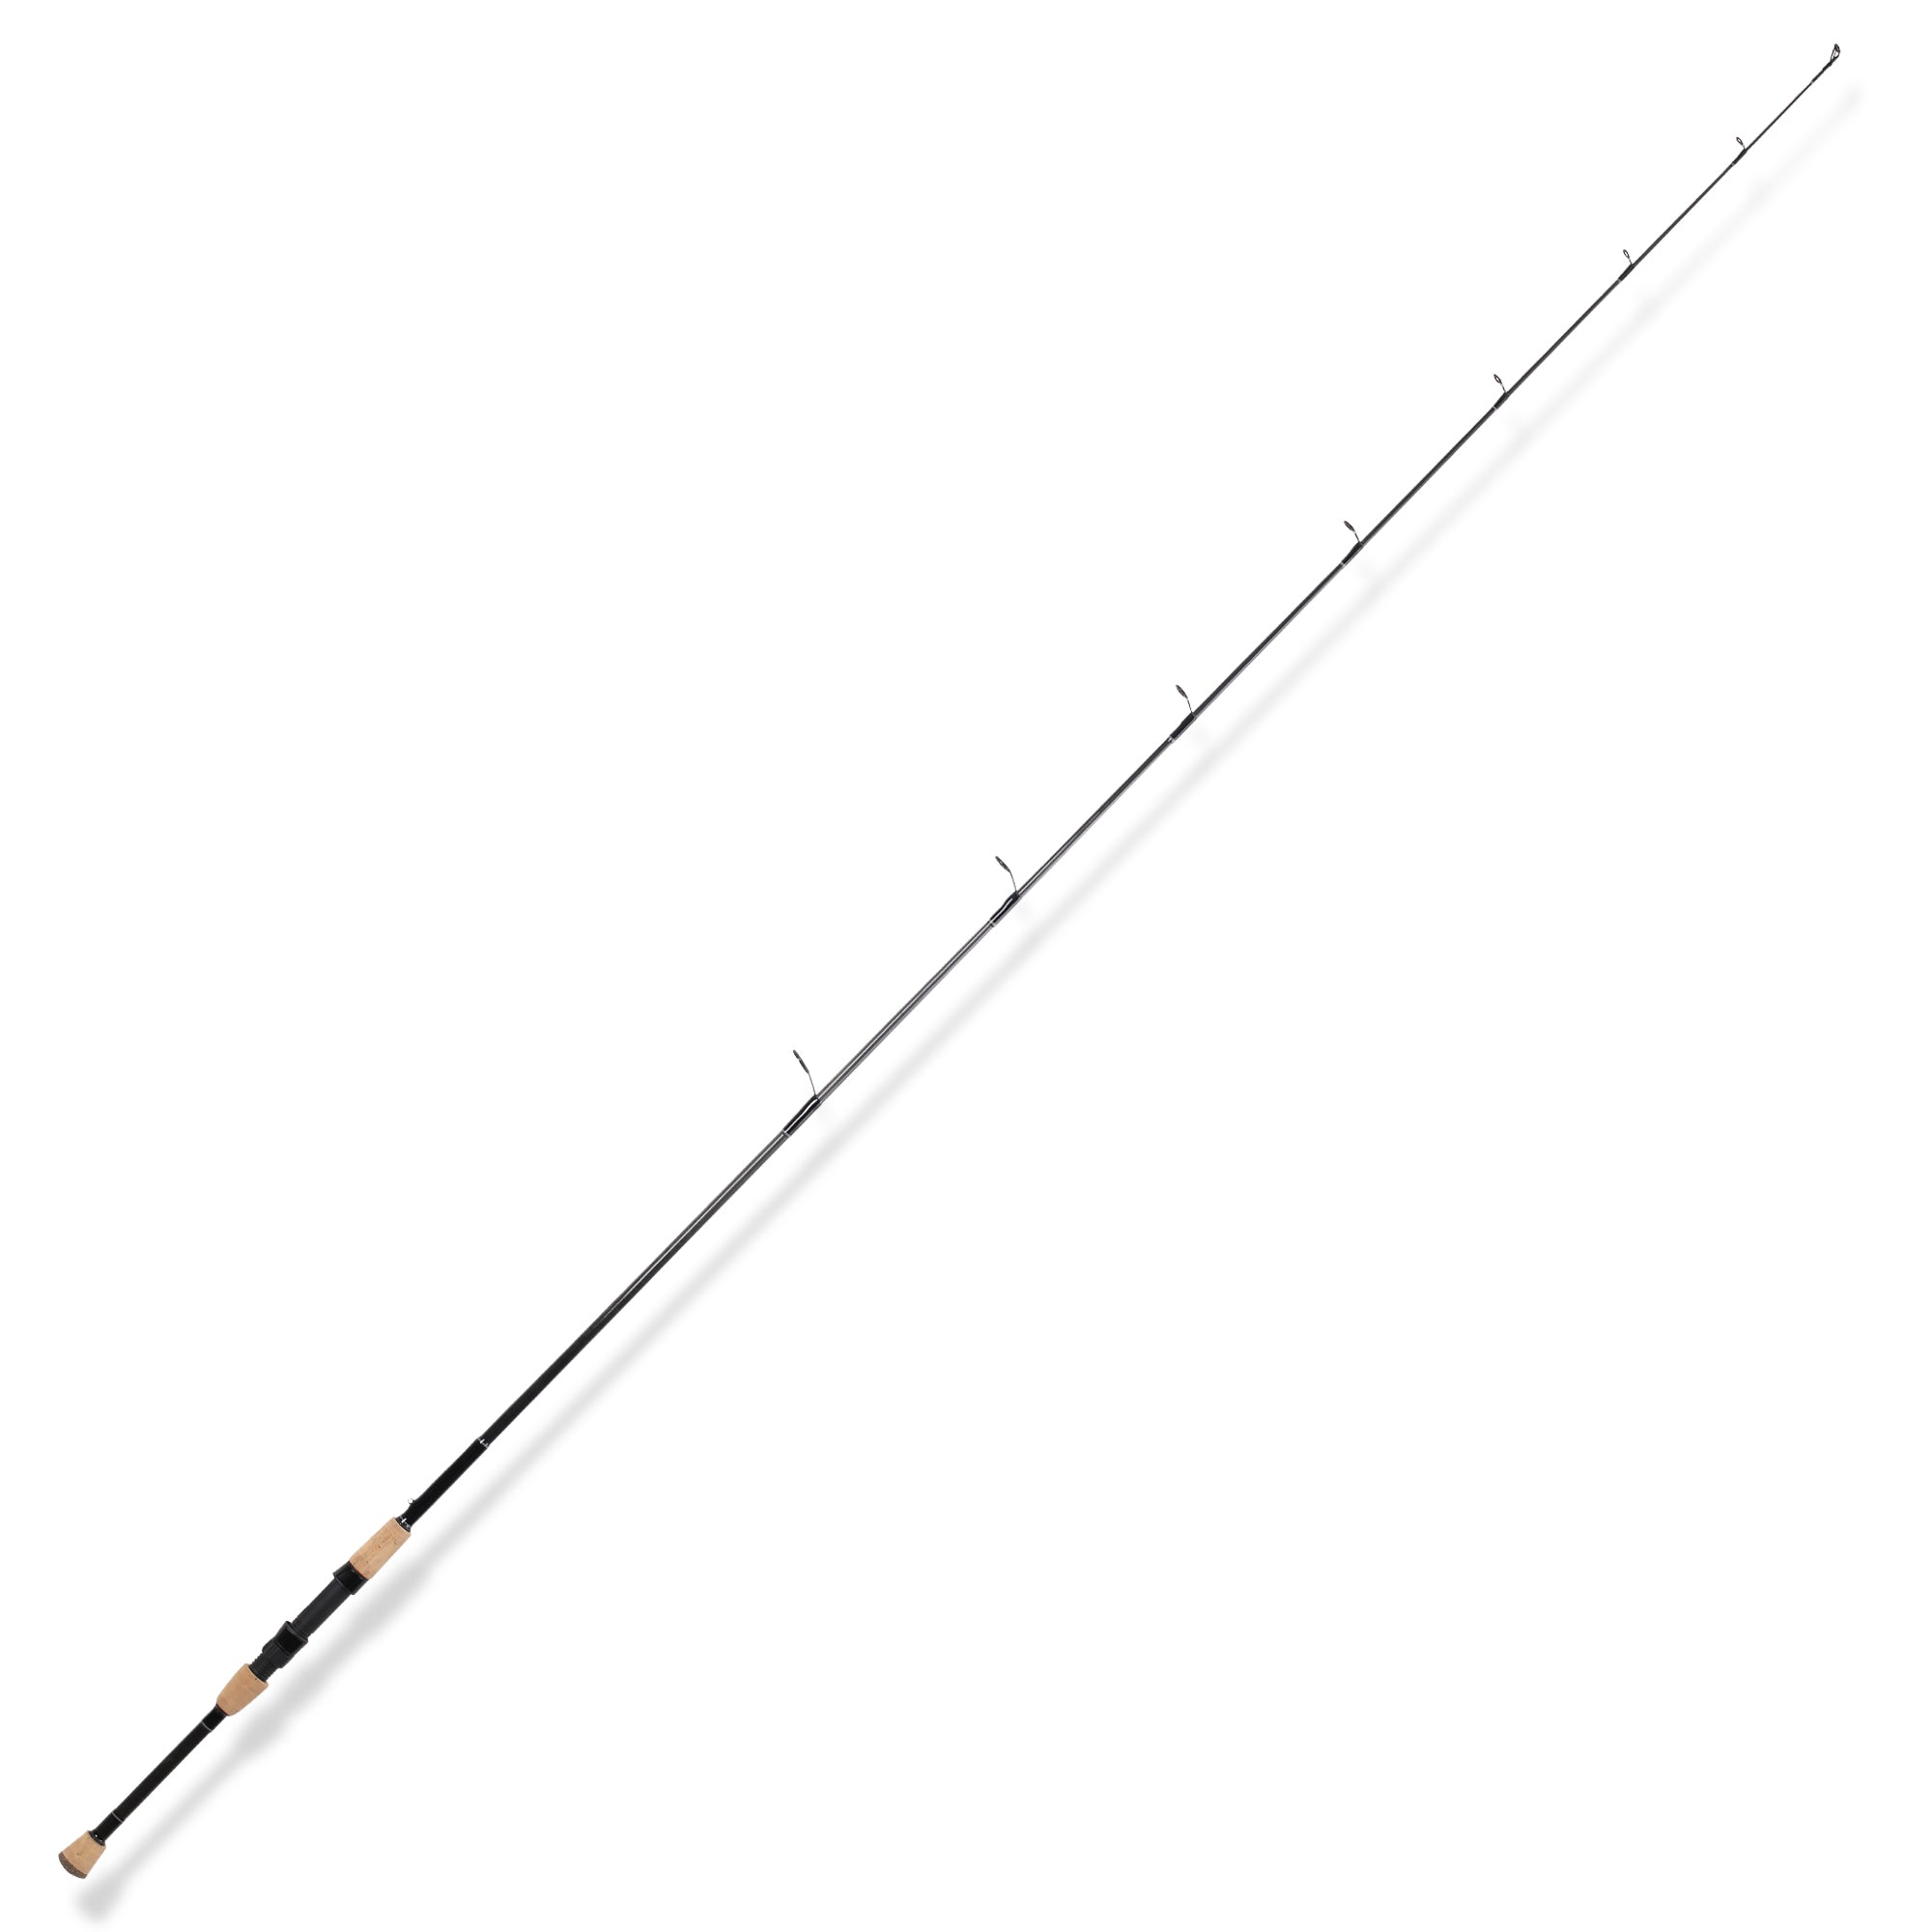 12 foot fishing rod 360 fishing rod short fishing rod yellow 360 fly  fishing rod fishing rod 12 foot